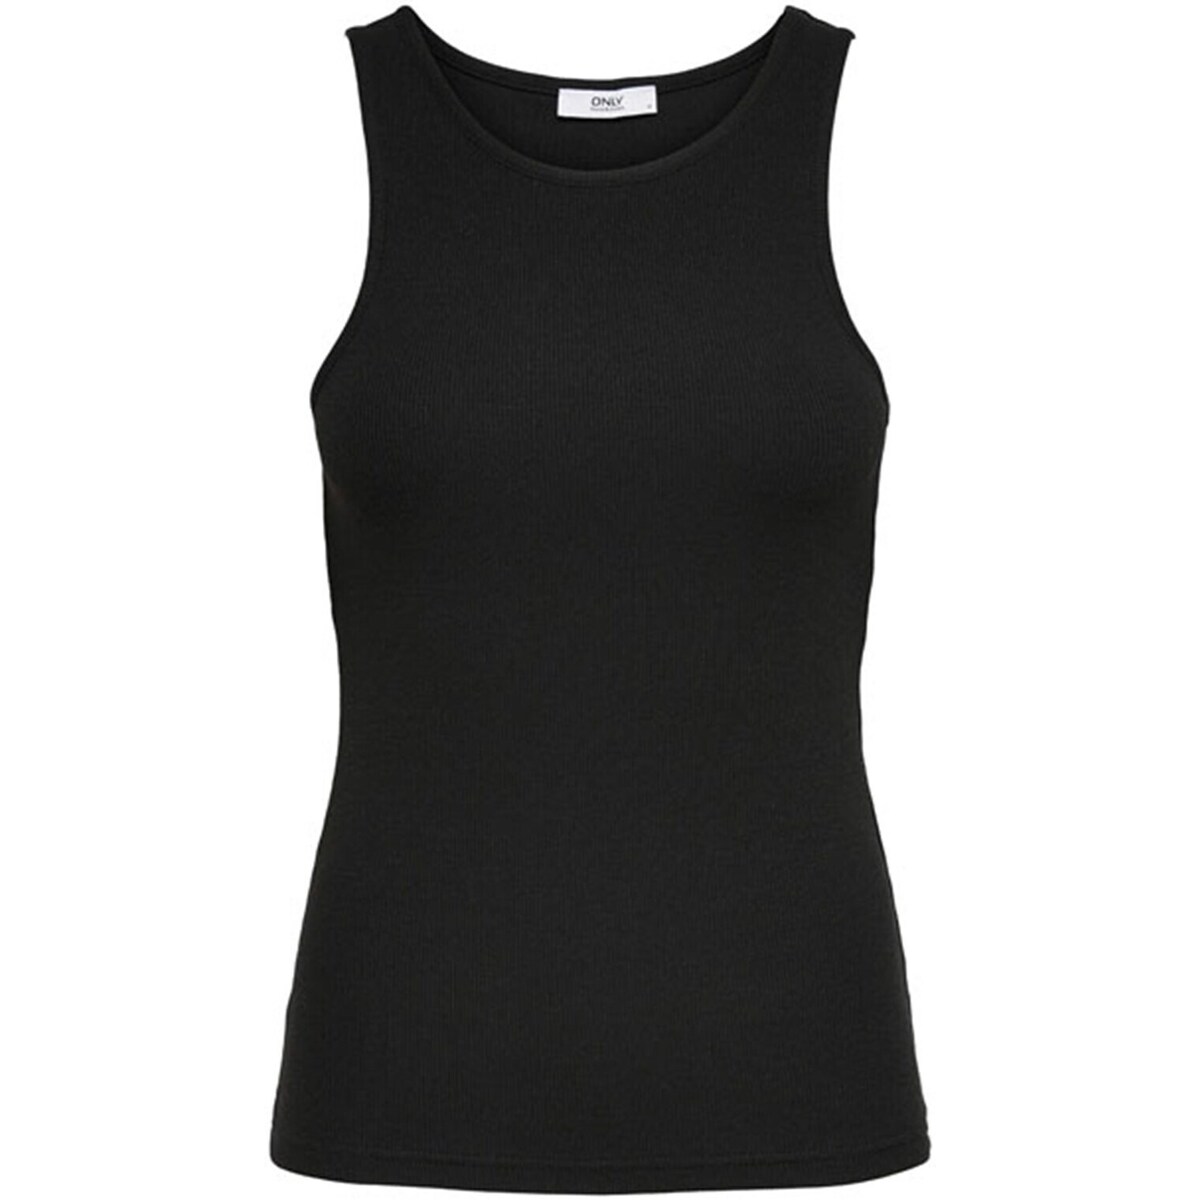 Abbigliamento Donna Top / T-shirt senza maniche Only 15234659 Nero